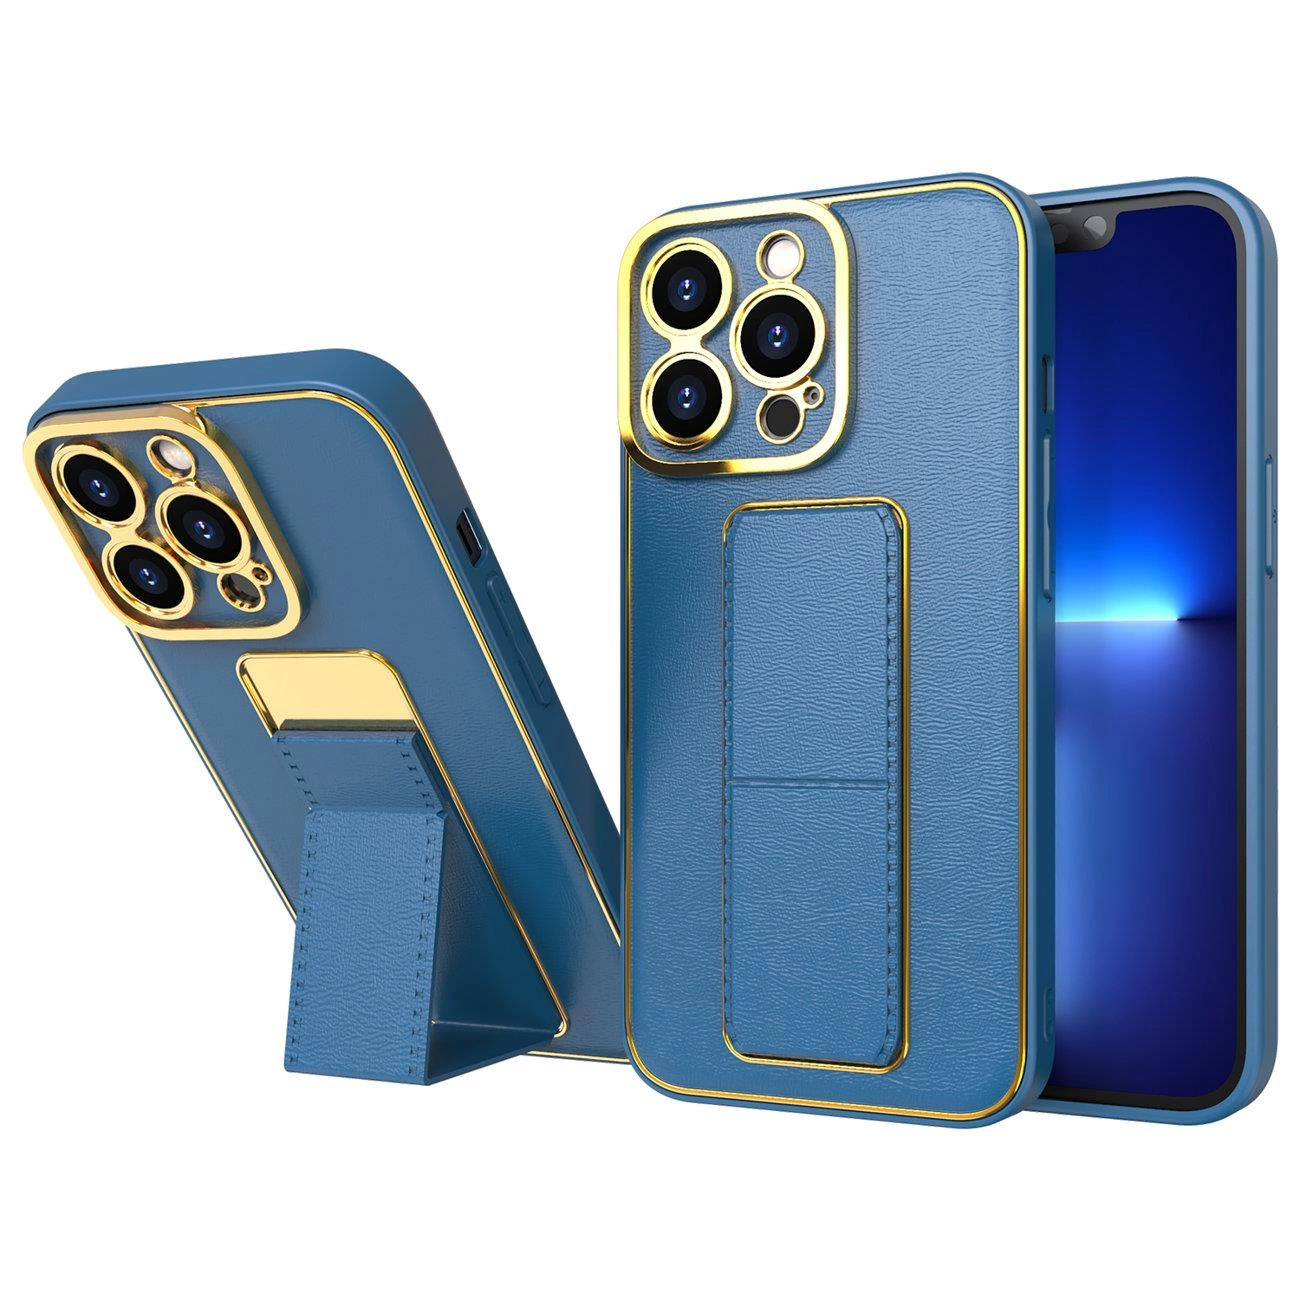 Hurtel Nové pouzdro Kickstand pro iPhone 12 se stojánkem modré barvy